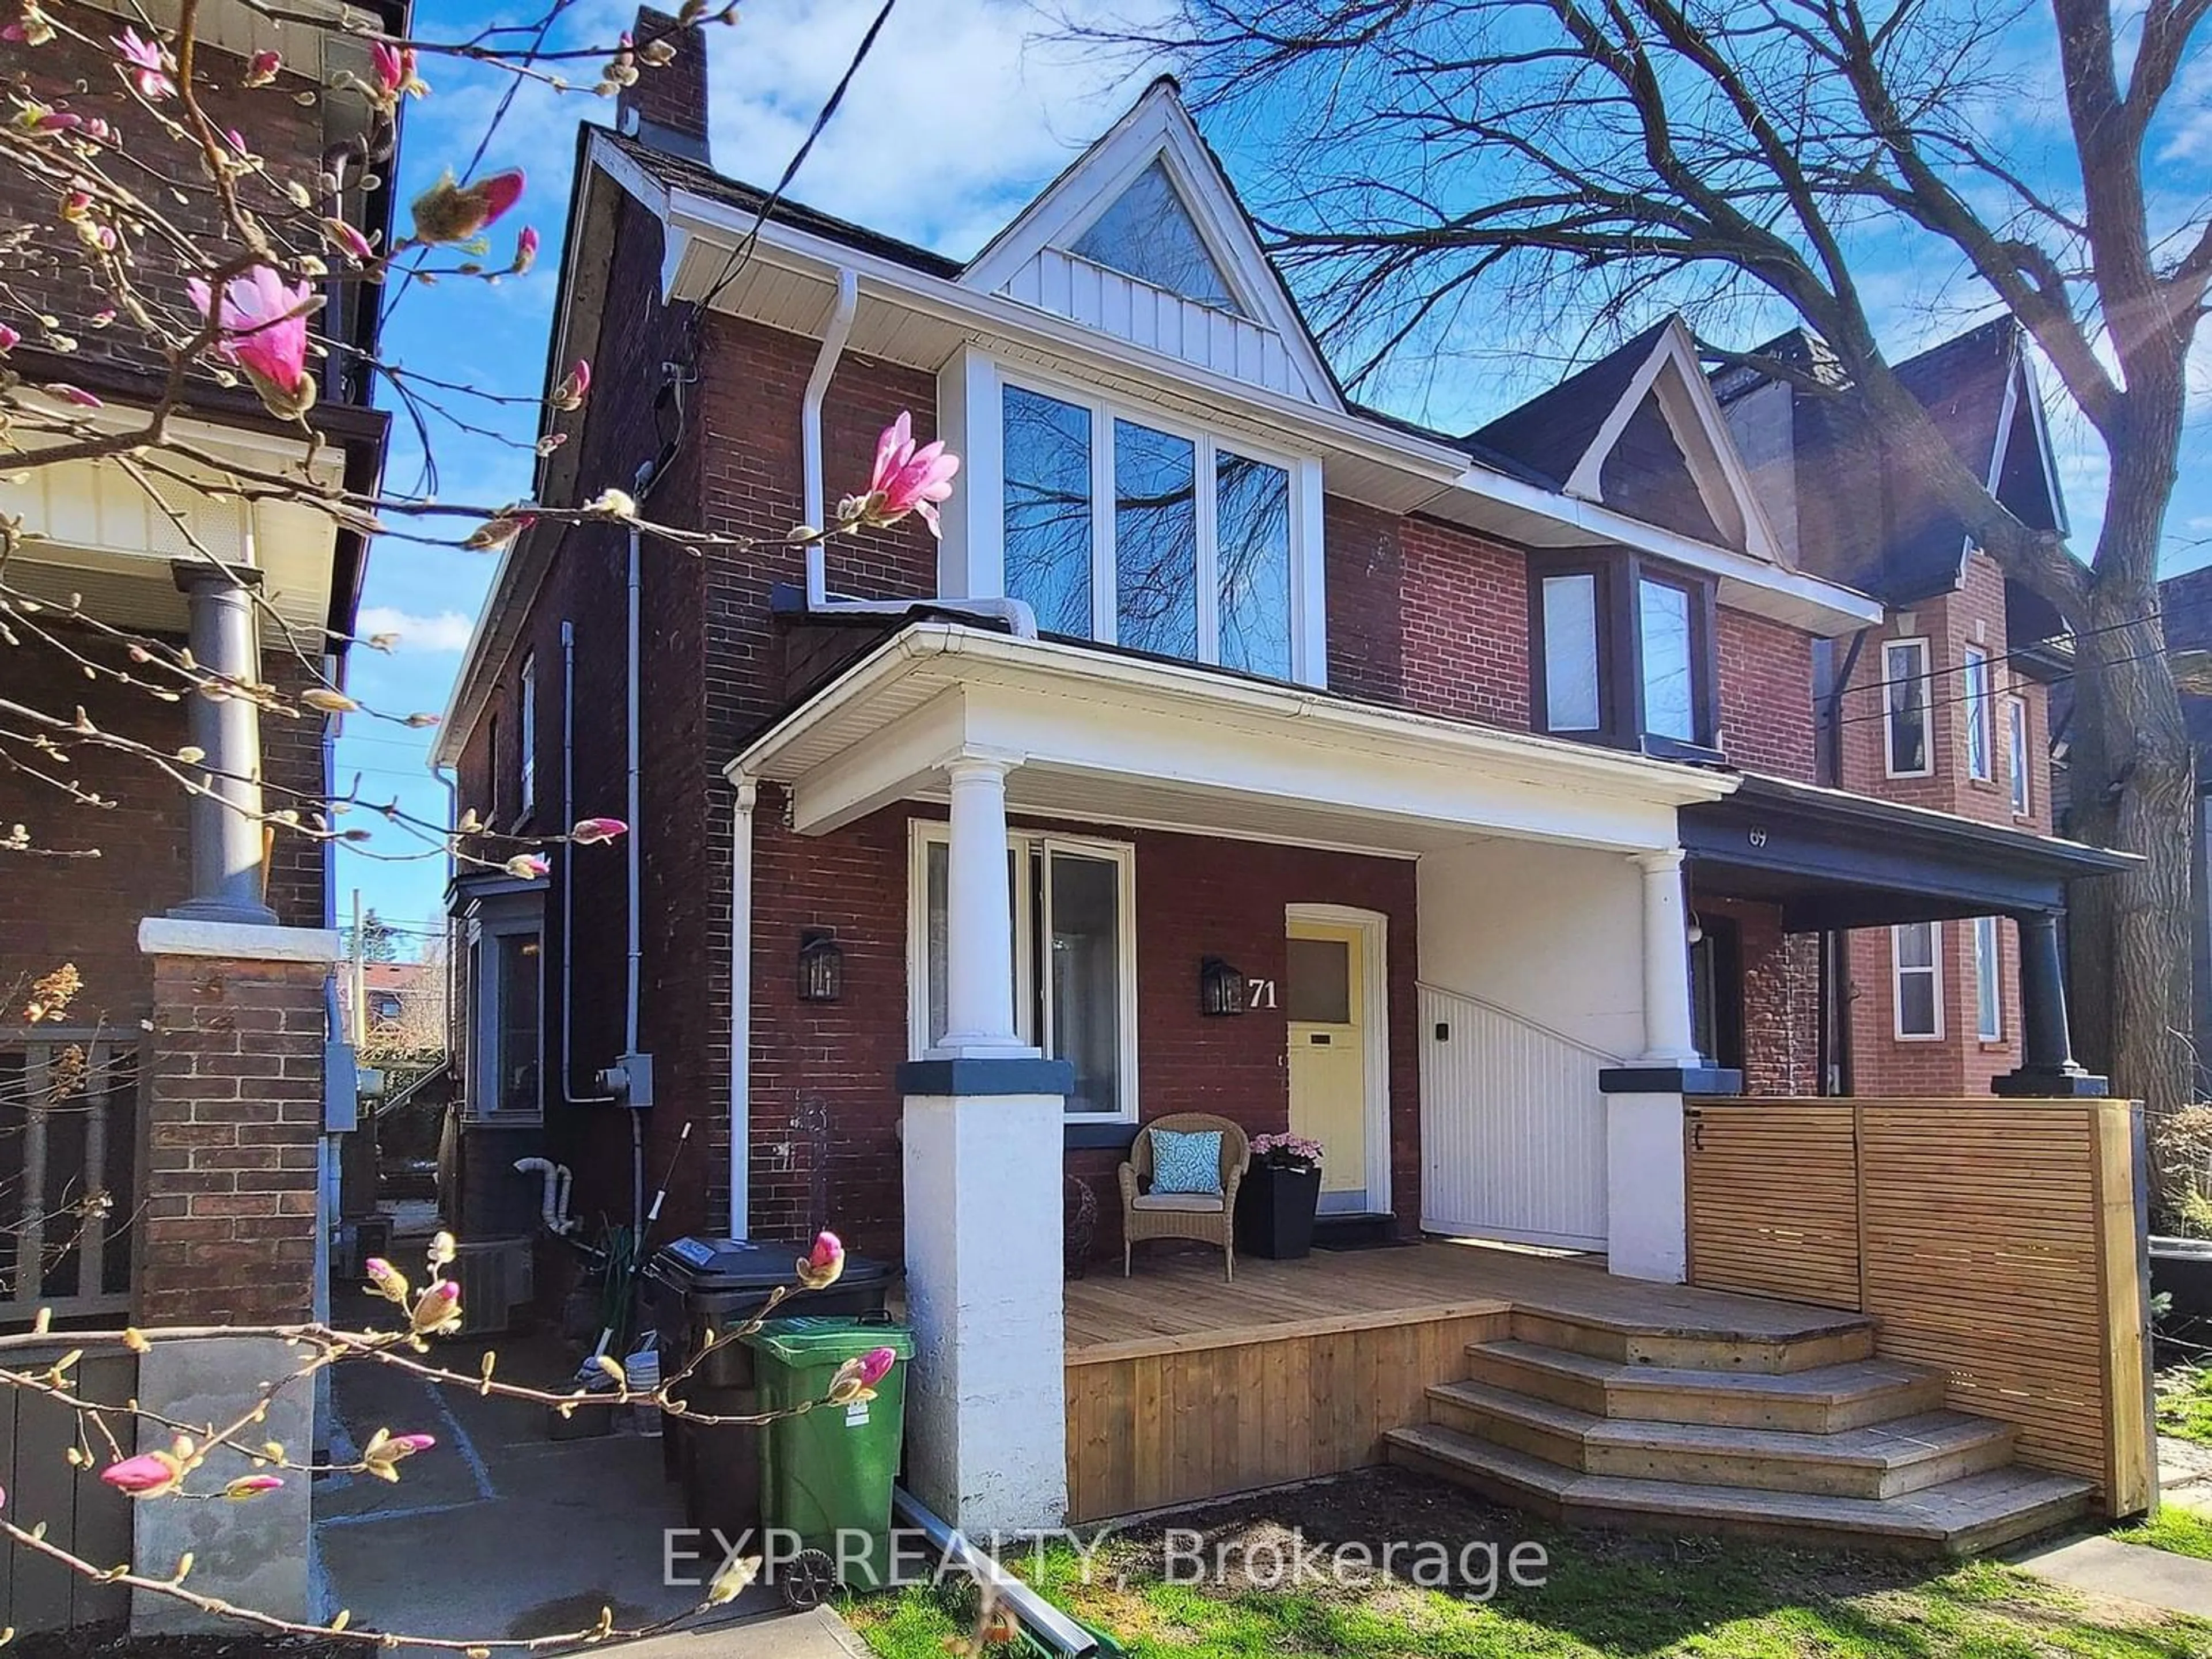 Home with brick exterior material for 71 Dagmar Ave, Toronto Ontario M4M 1V9